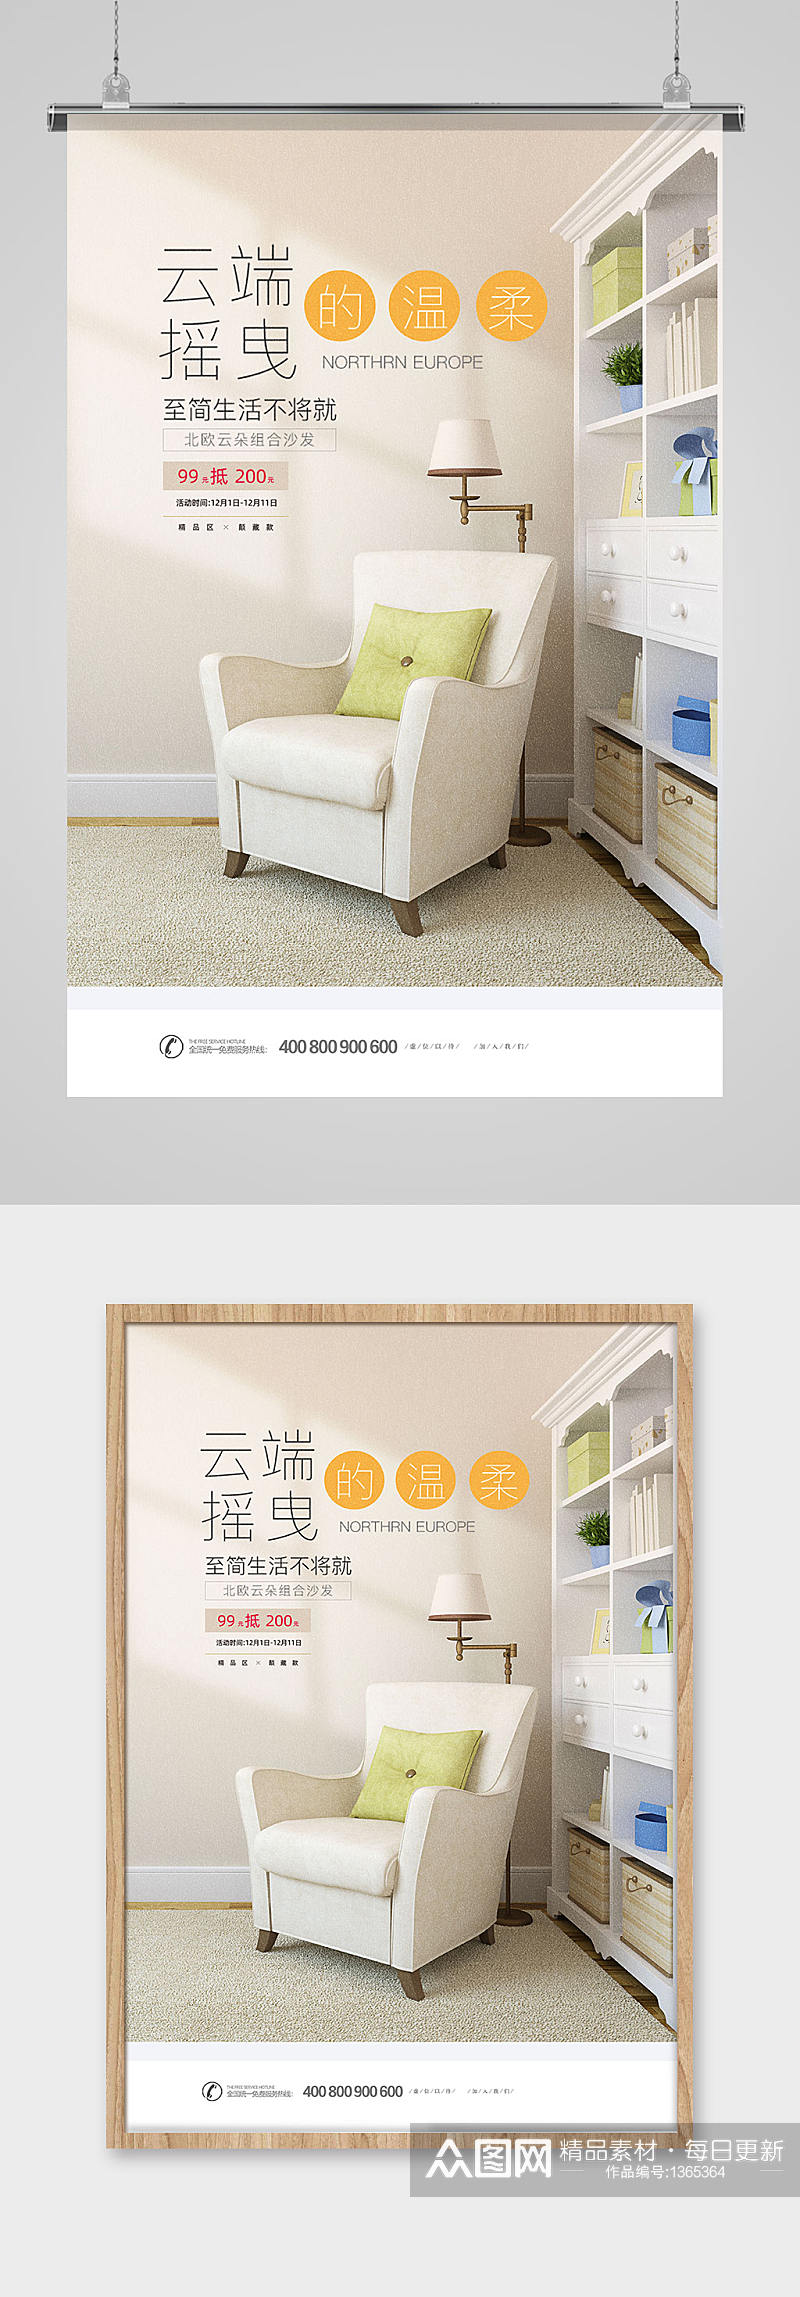 简约白色家具沙发海报设计素材